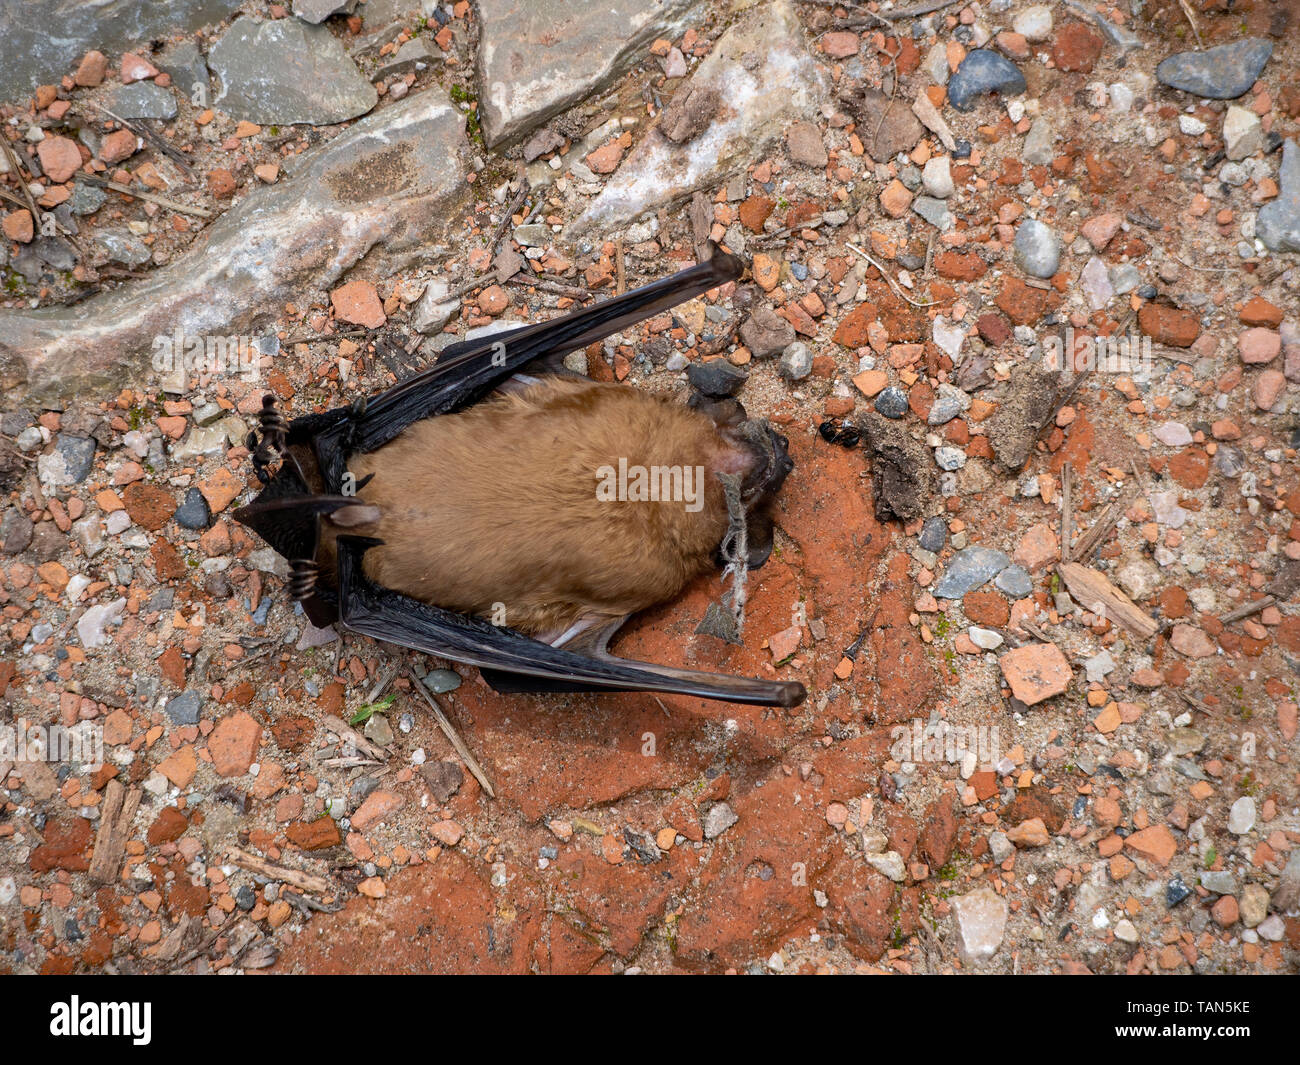 Bat muerta en el suelo. La causa de muerte de animales desconocidos. Pipistrellus pipistrellus. Foto de stock